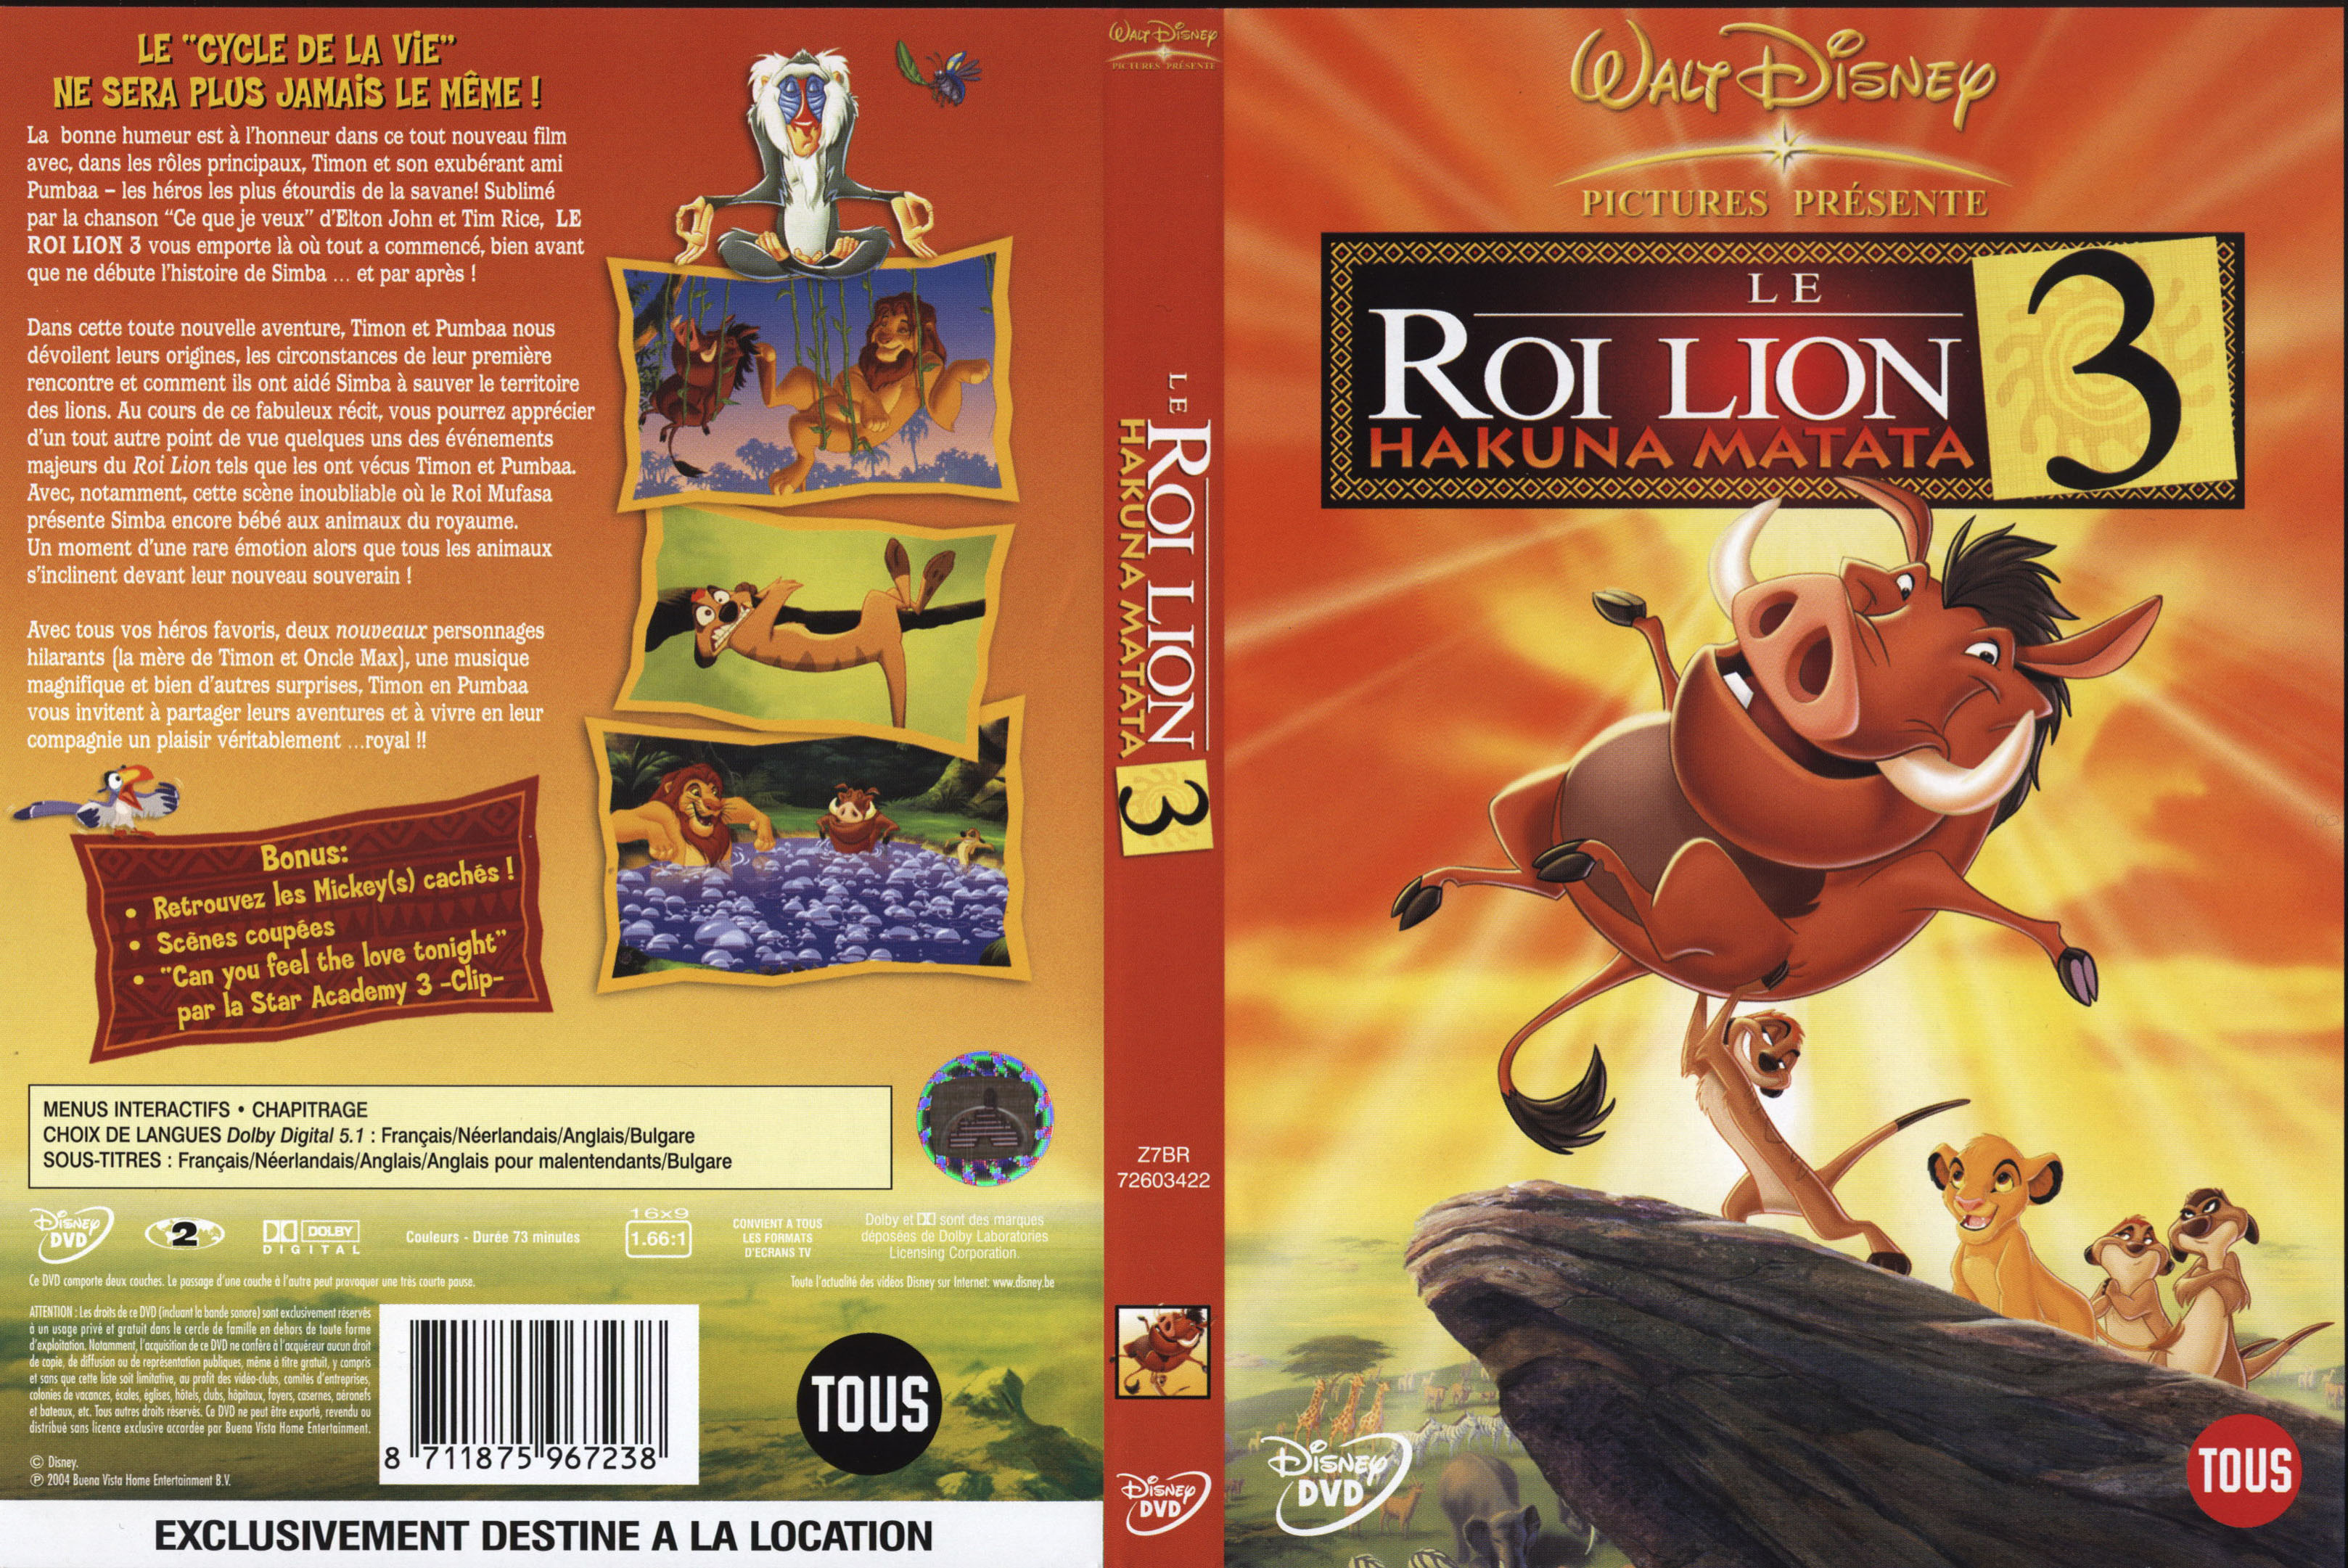 Jaquette DVD Le roi lion 3 v2